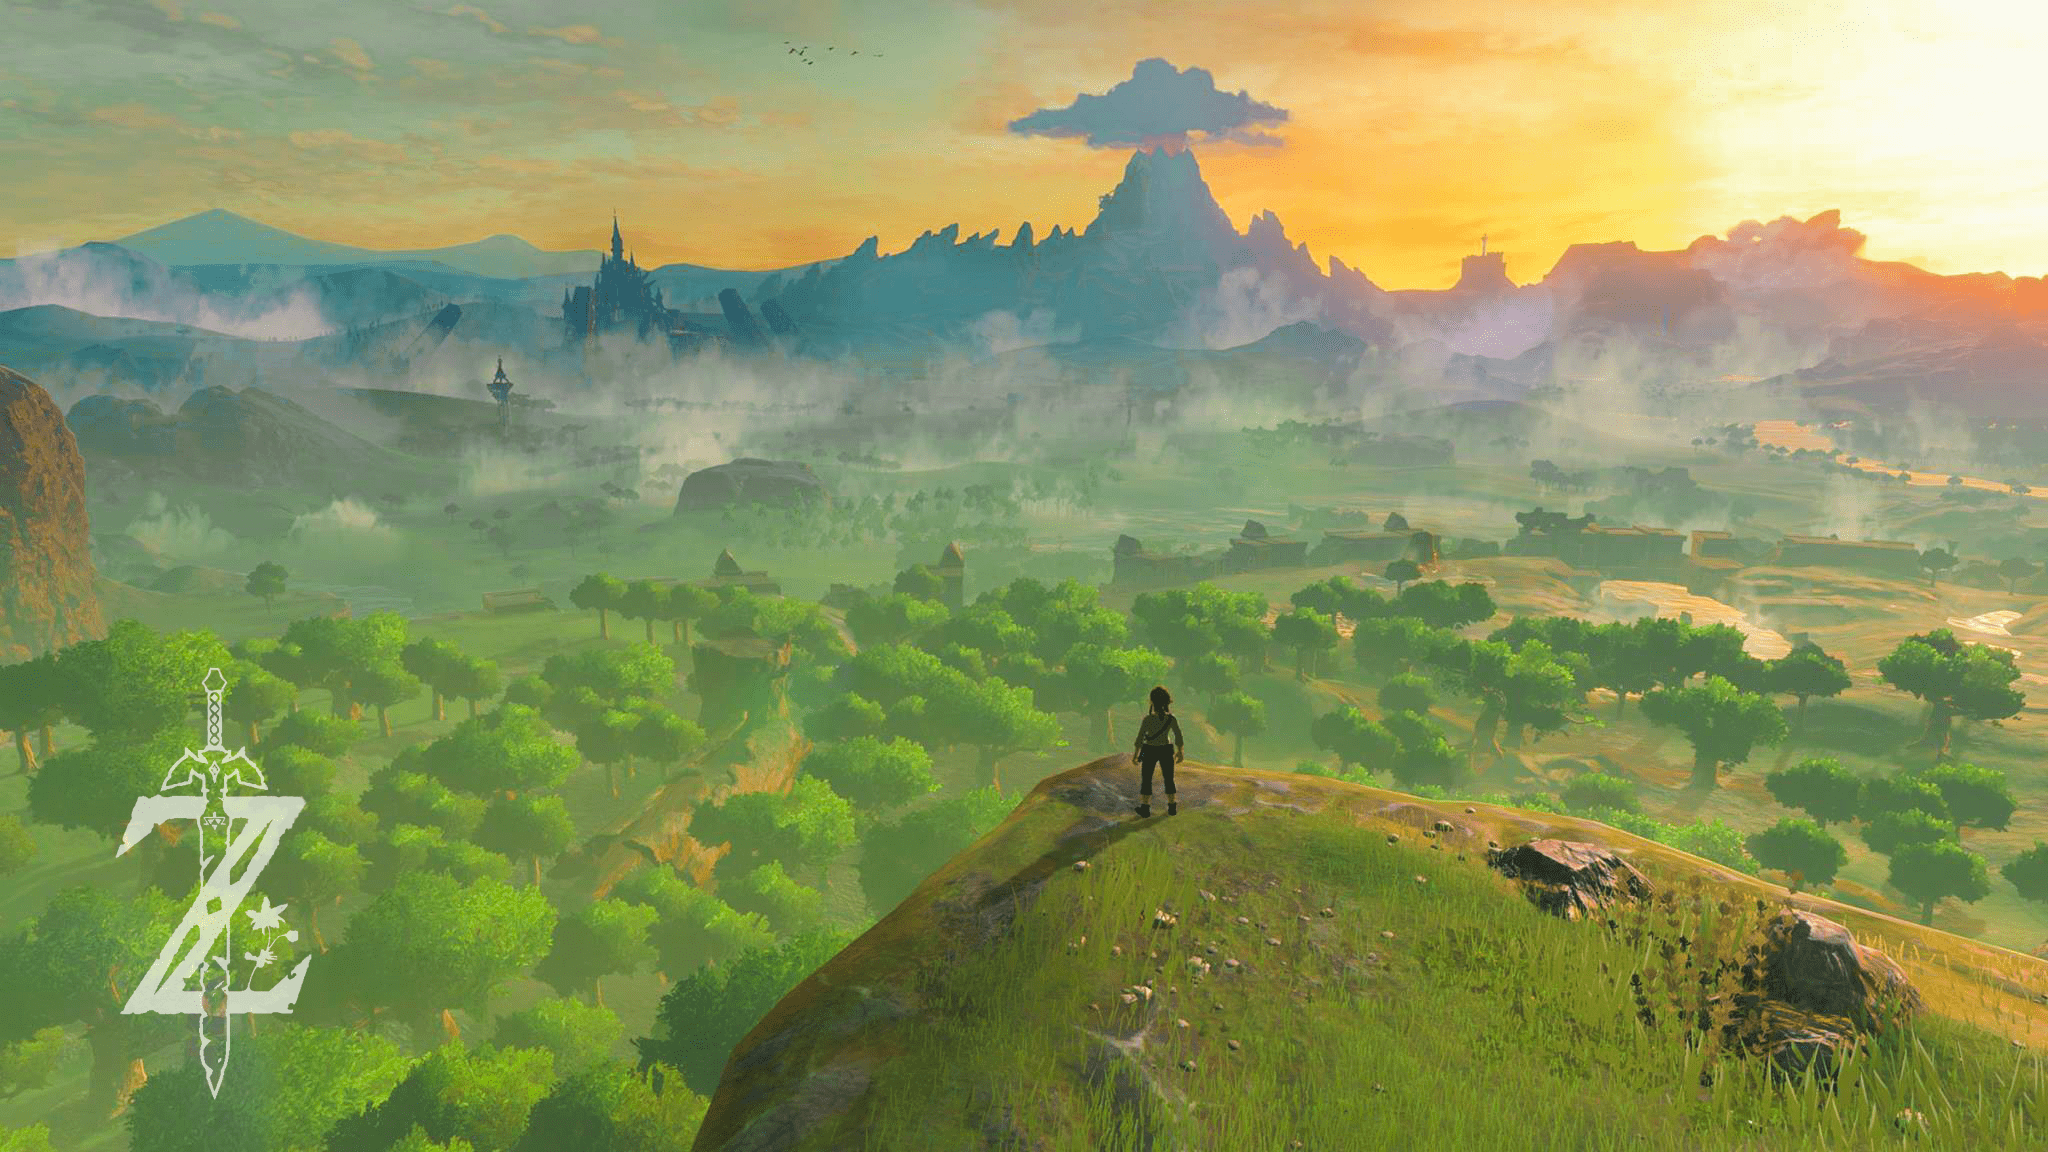 Zelda Landscape Wallpapers - Top Free Zelda Landscape Backgrounds